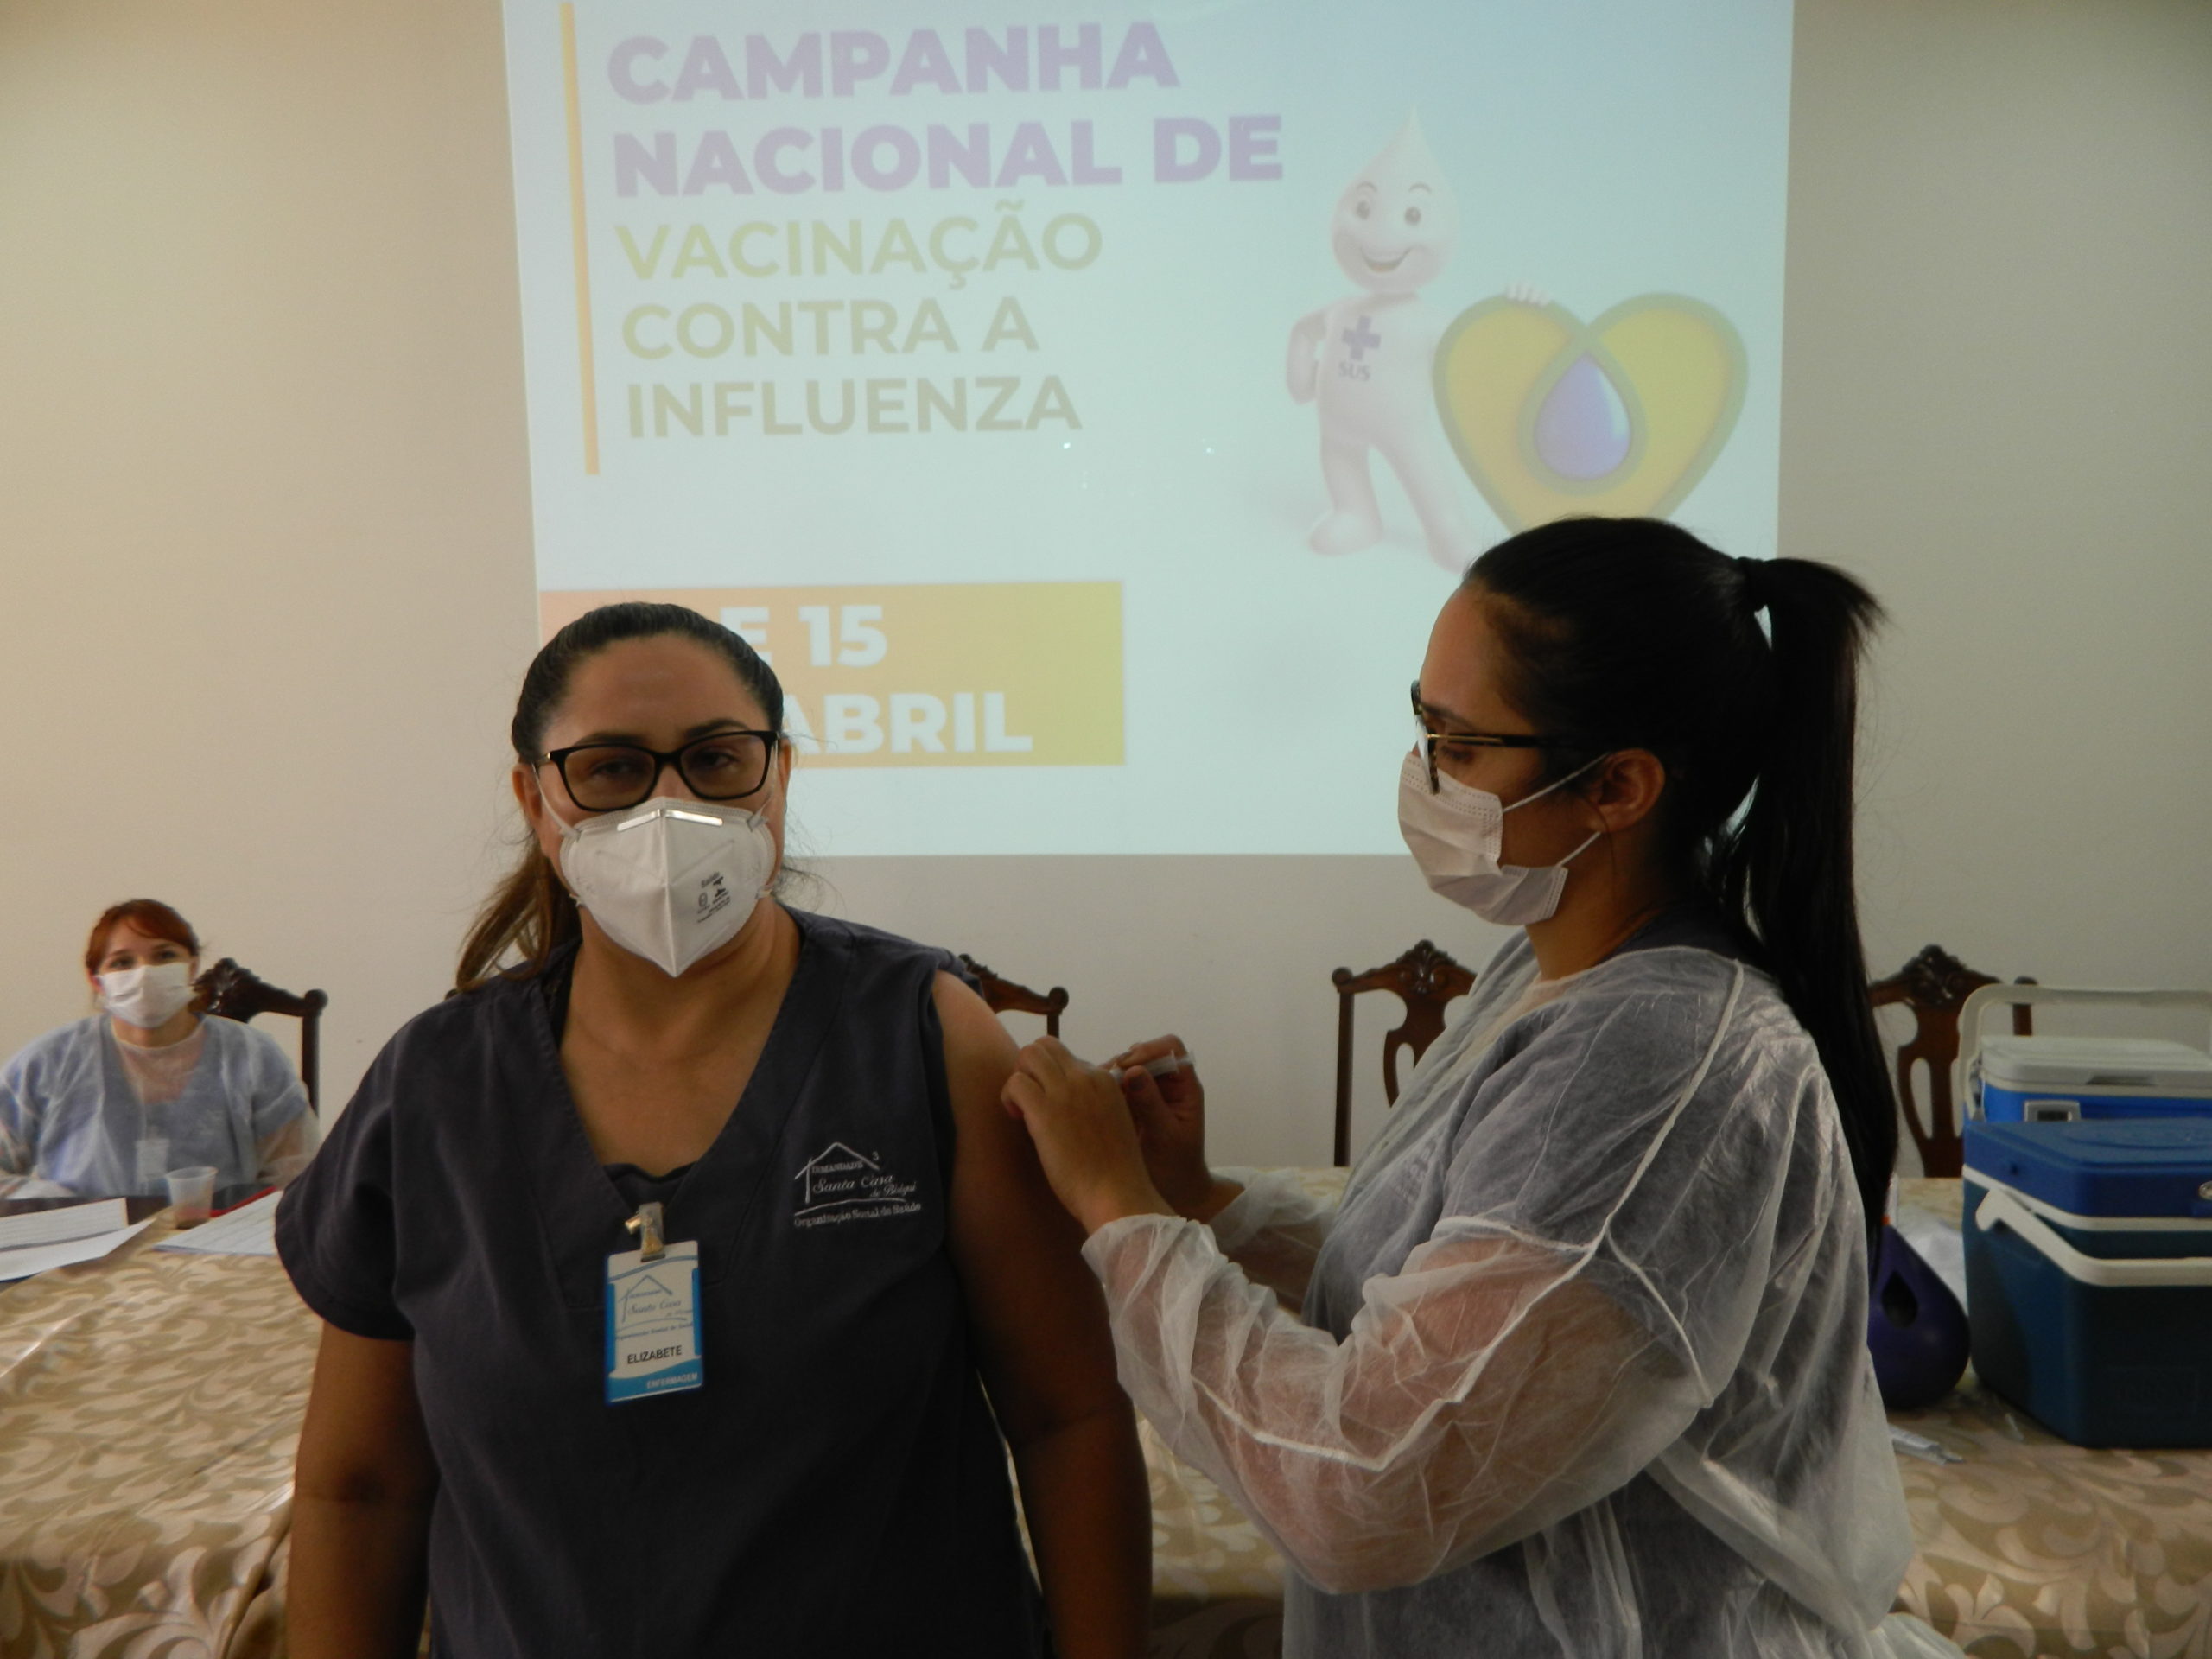 Nos dias 14 e 15 de abril, aconteceu a campanha de vacinação contra a Influenza